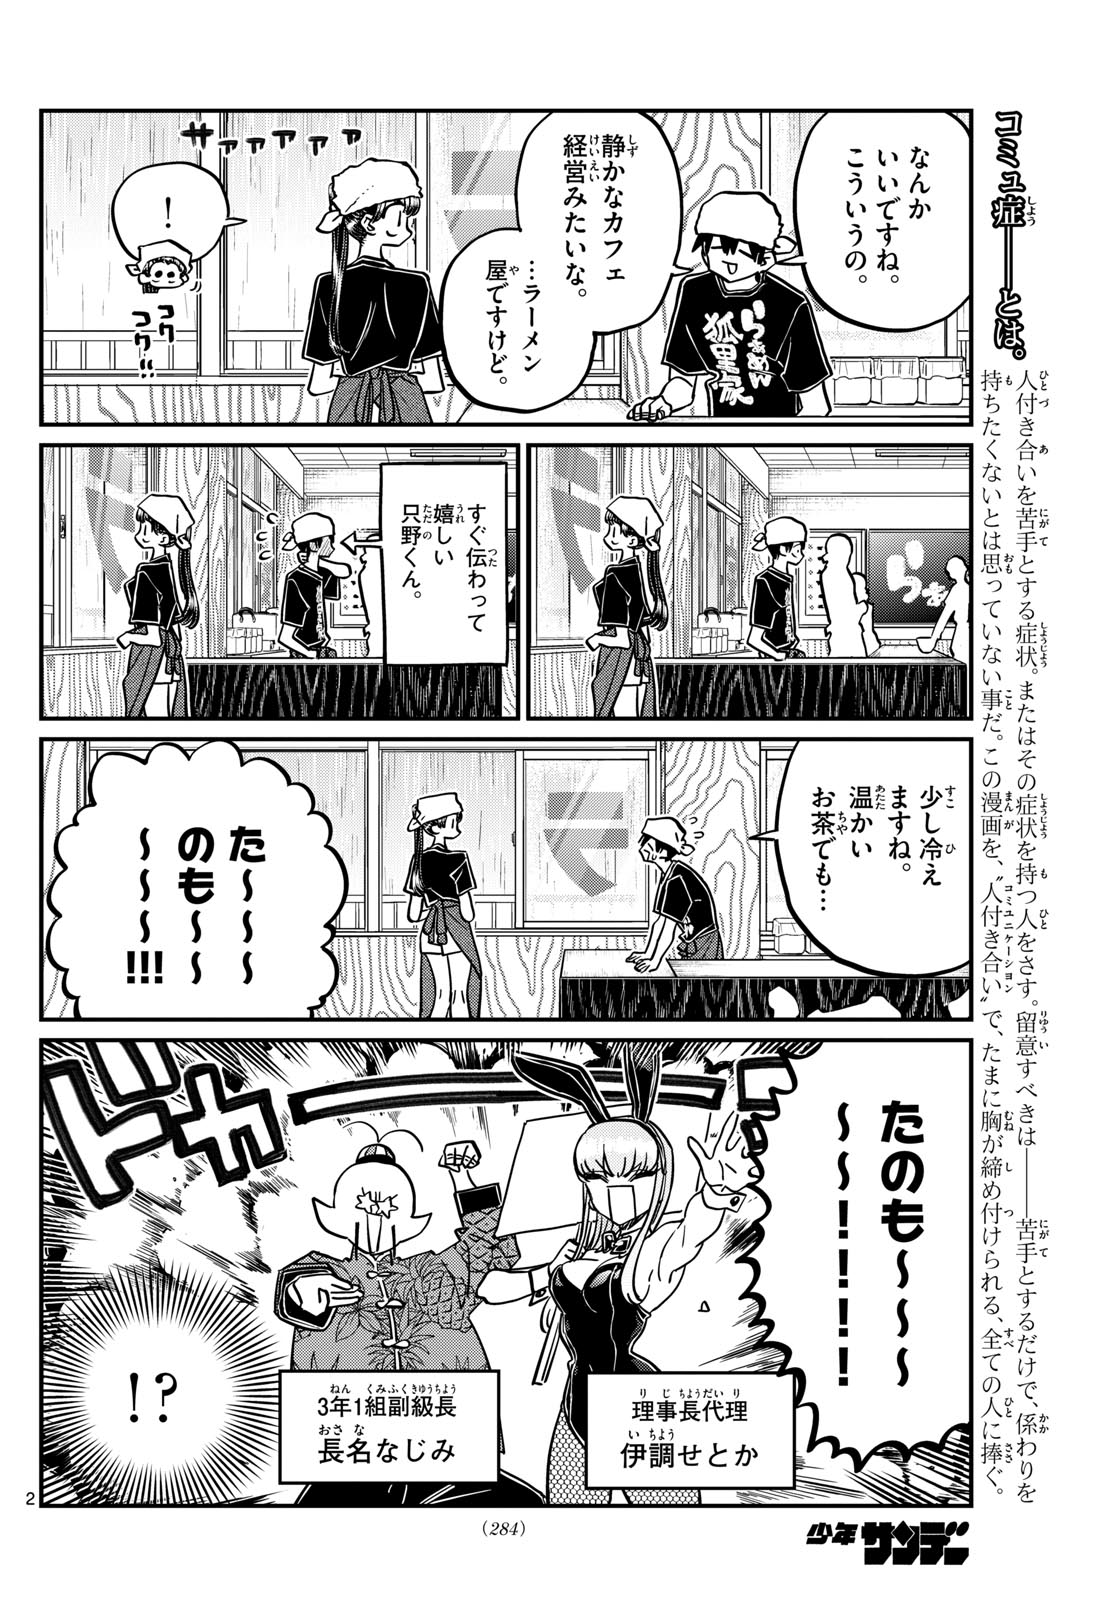 Komi-san wa Komyushou Desu - Chapter 455 - Page 2